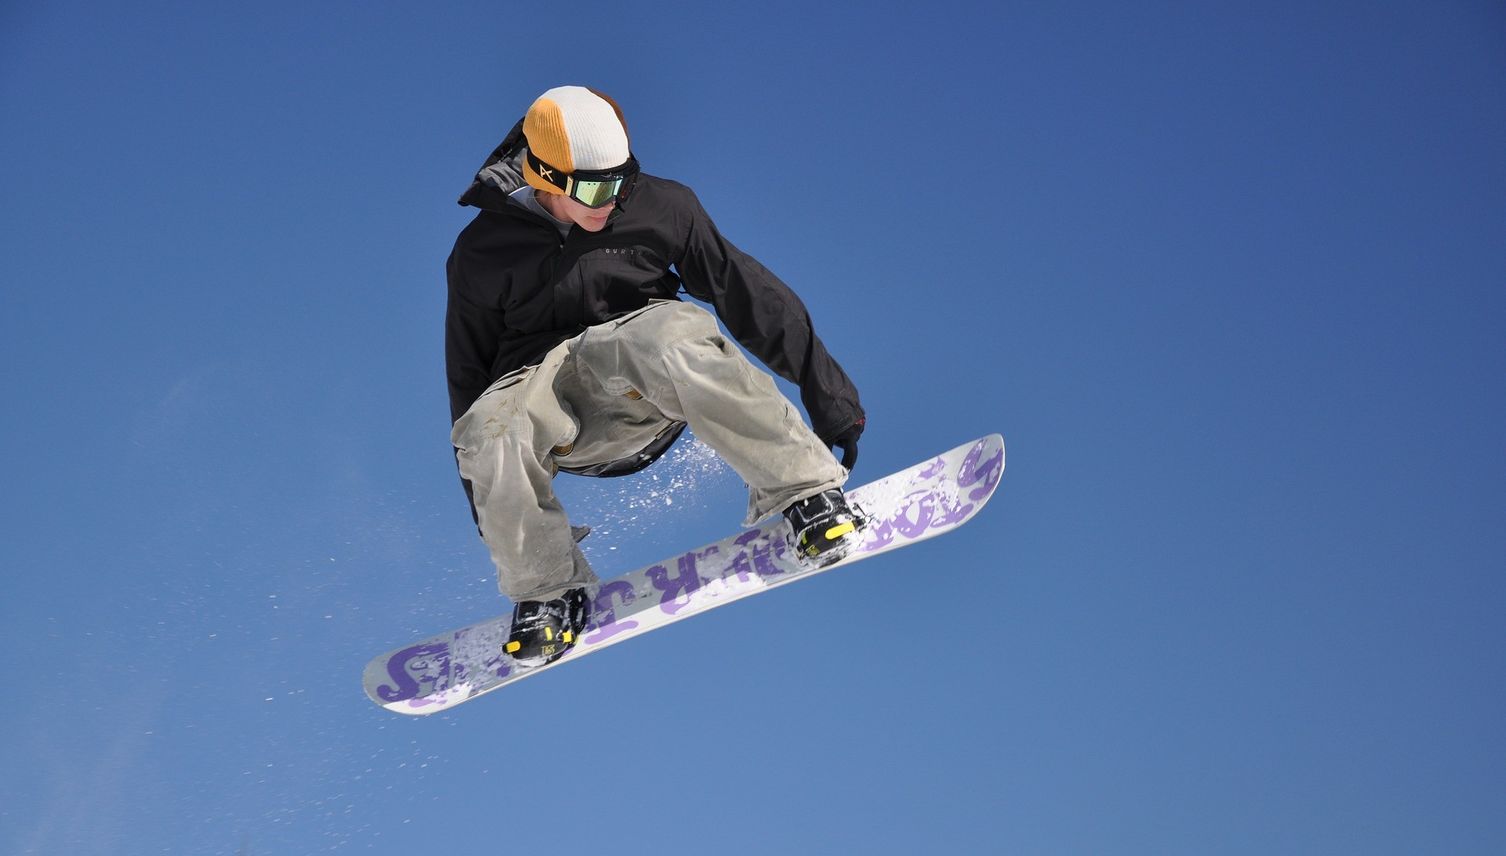 Jeder Snowboarder kann seine eigene Spur hinterlassen